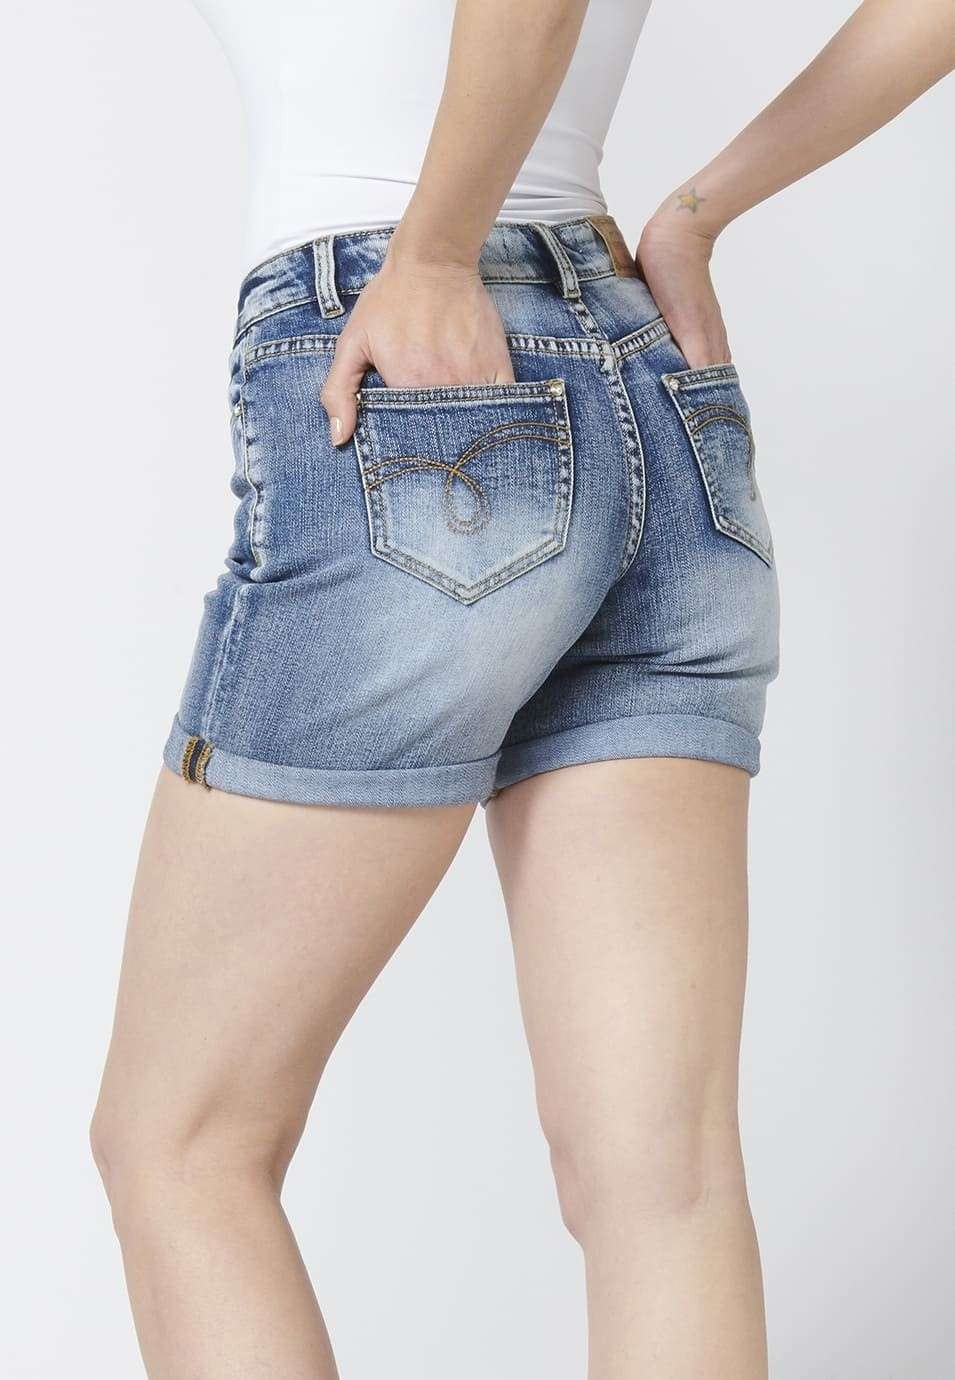 Pantalón corto mujer denim short tejano elástico encima rodilla detalles con rotos